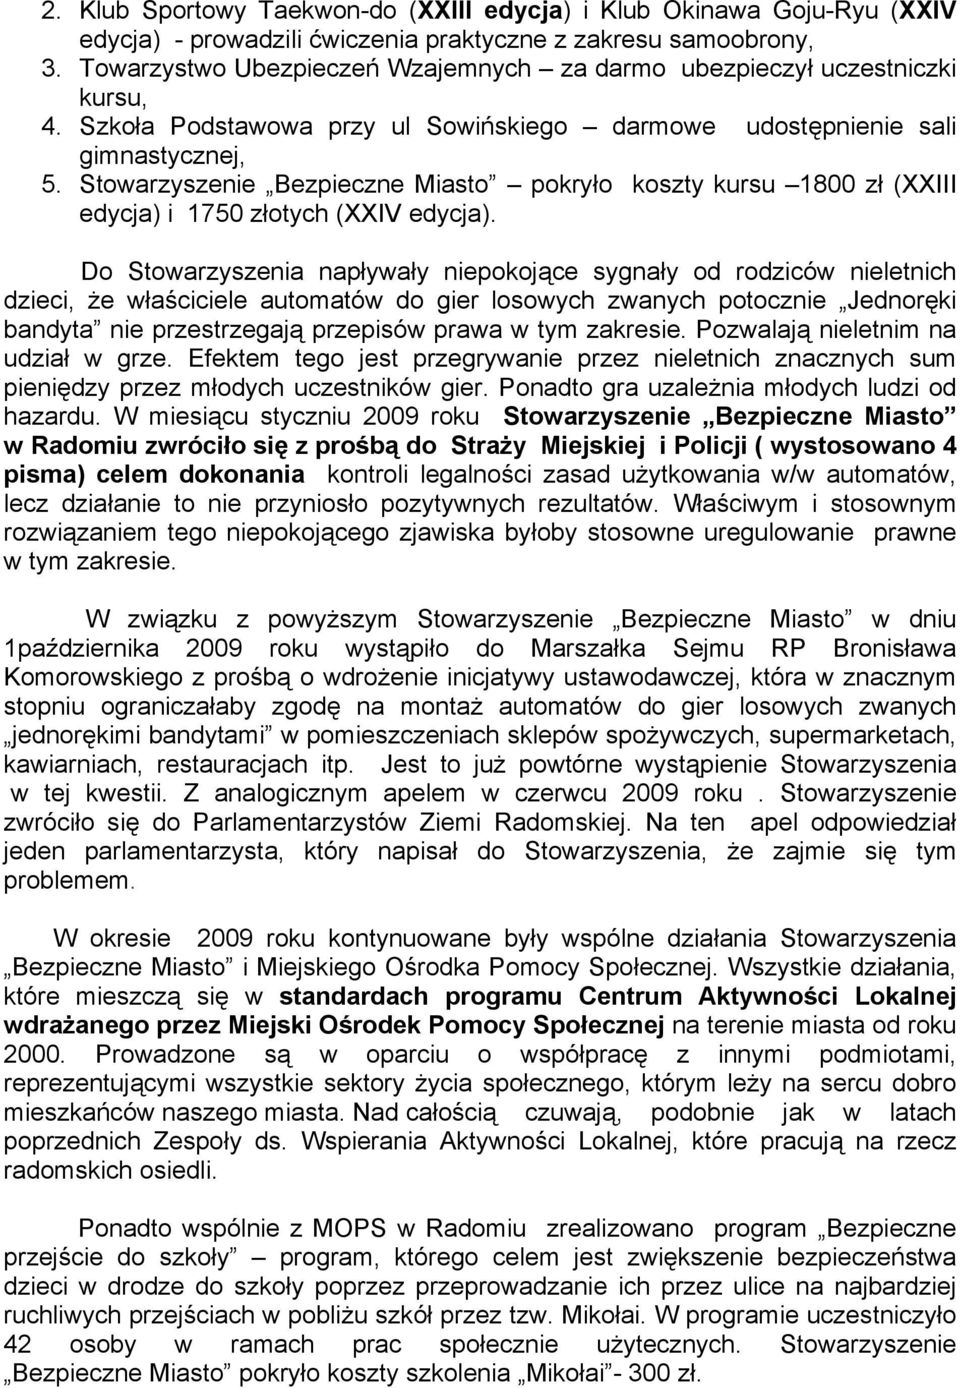 Stowarzyszenie Bezpieczne Miasto pokryło koszty kursu 1800 zł (XXIII edycja) i 1750 złotych (XXIV edycja).